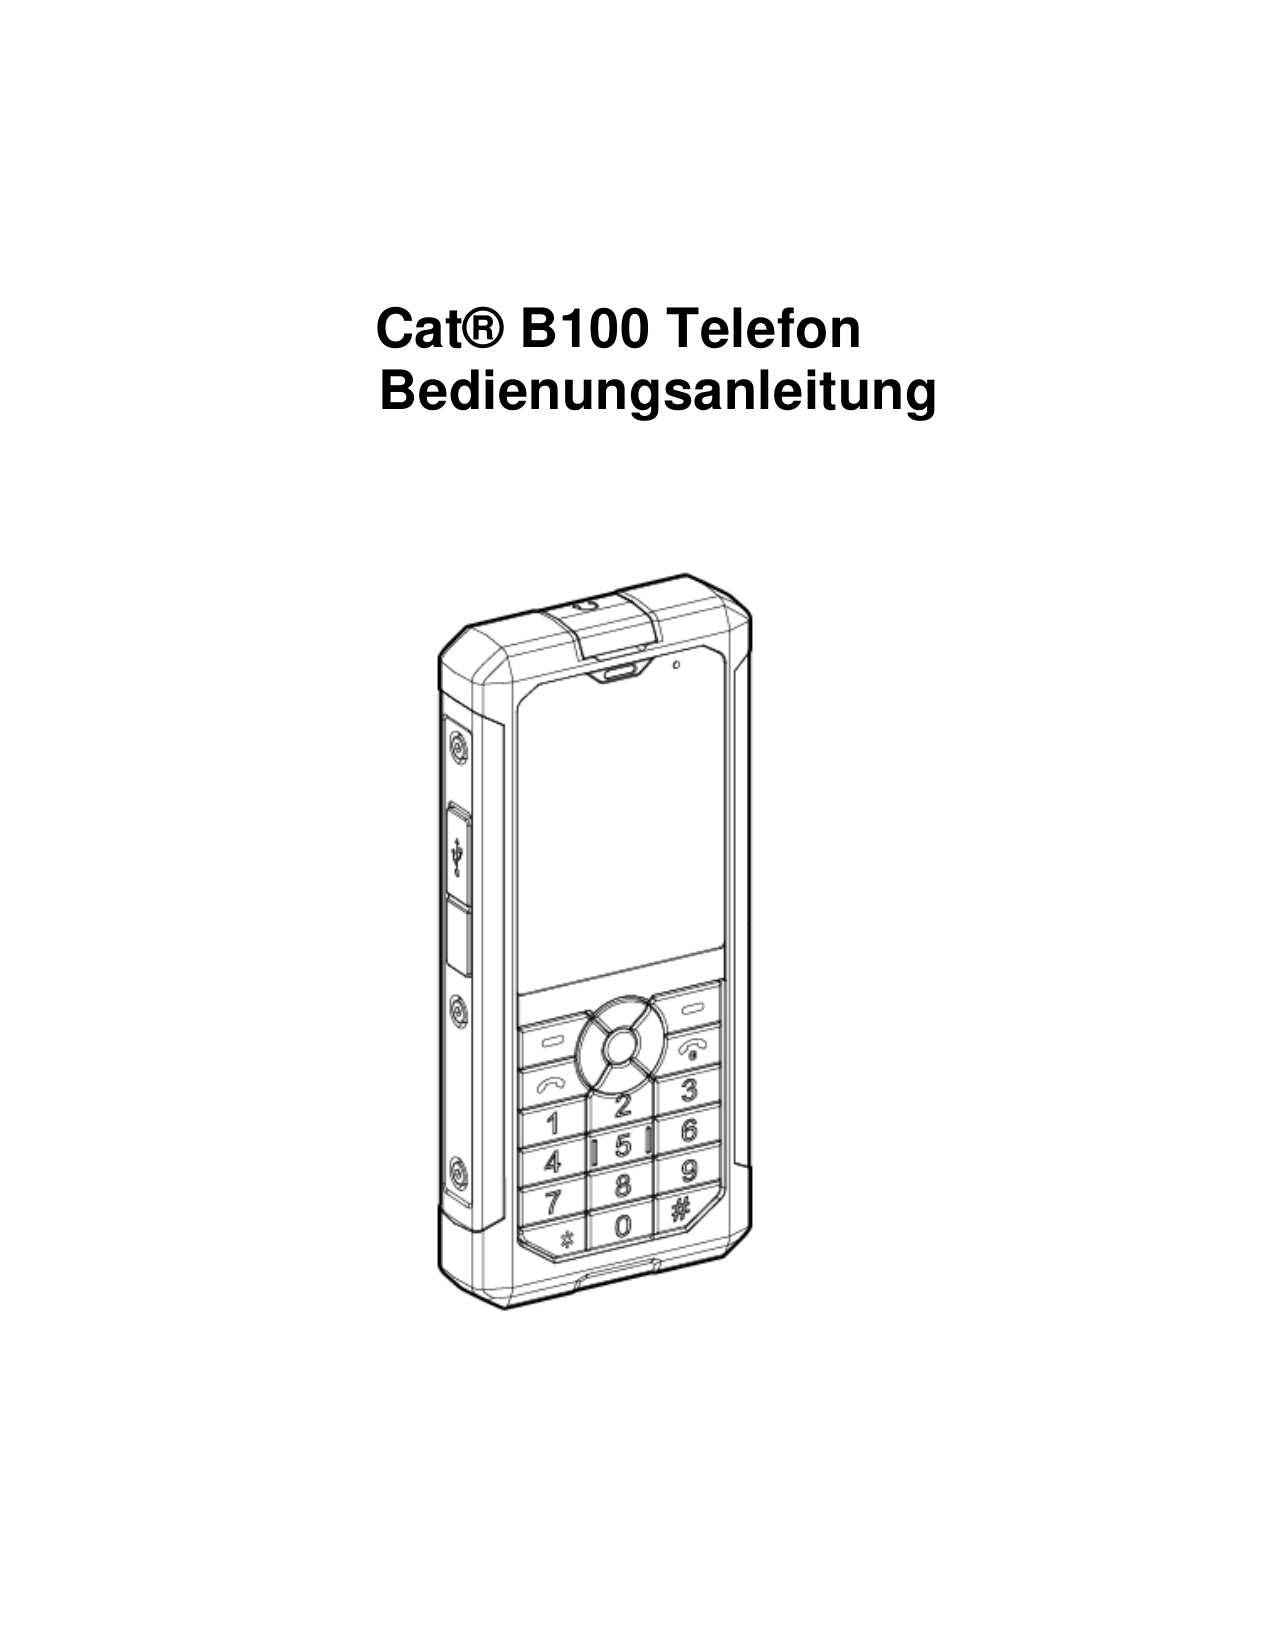 Cat® B100 TelefonBedienungsanleitung